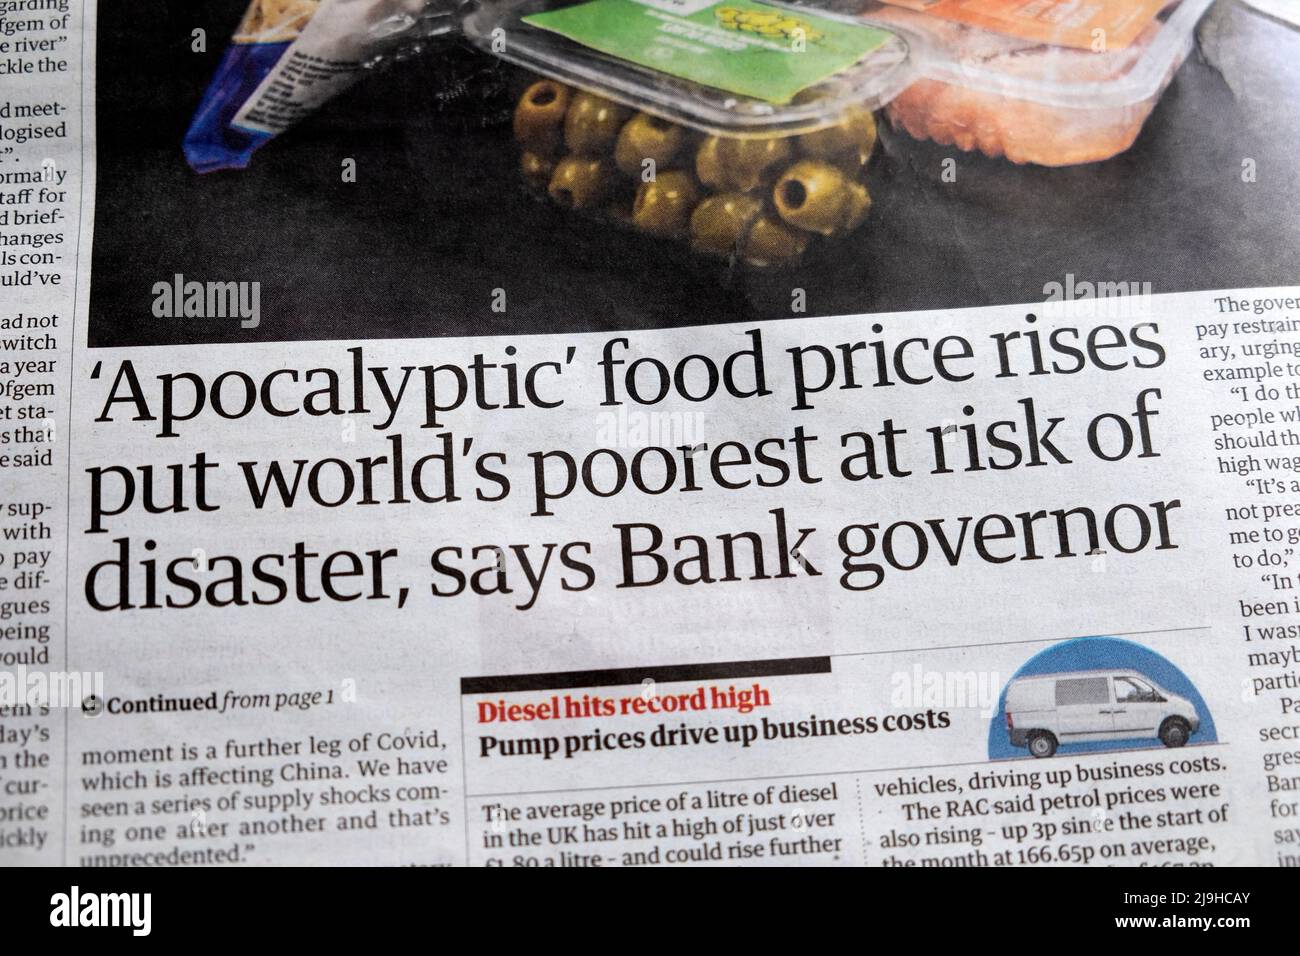 "L'aumento dei prezzi dei prodotti alimentari apocalittici ha messo i più poveri del mondo a rischio di disastro, dice il governatore della Banca" Guardian giornale taglio del titolo 17 maggio 2022 Londra UK Foto Stock